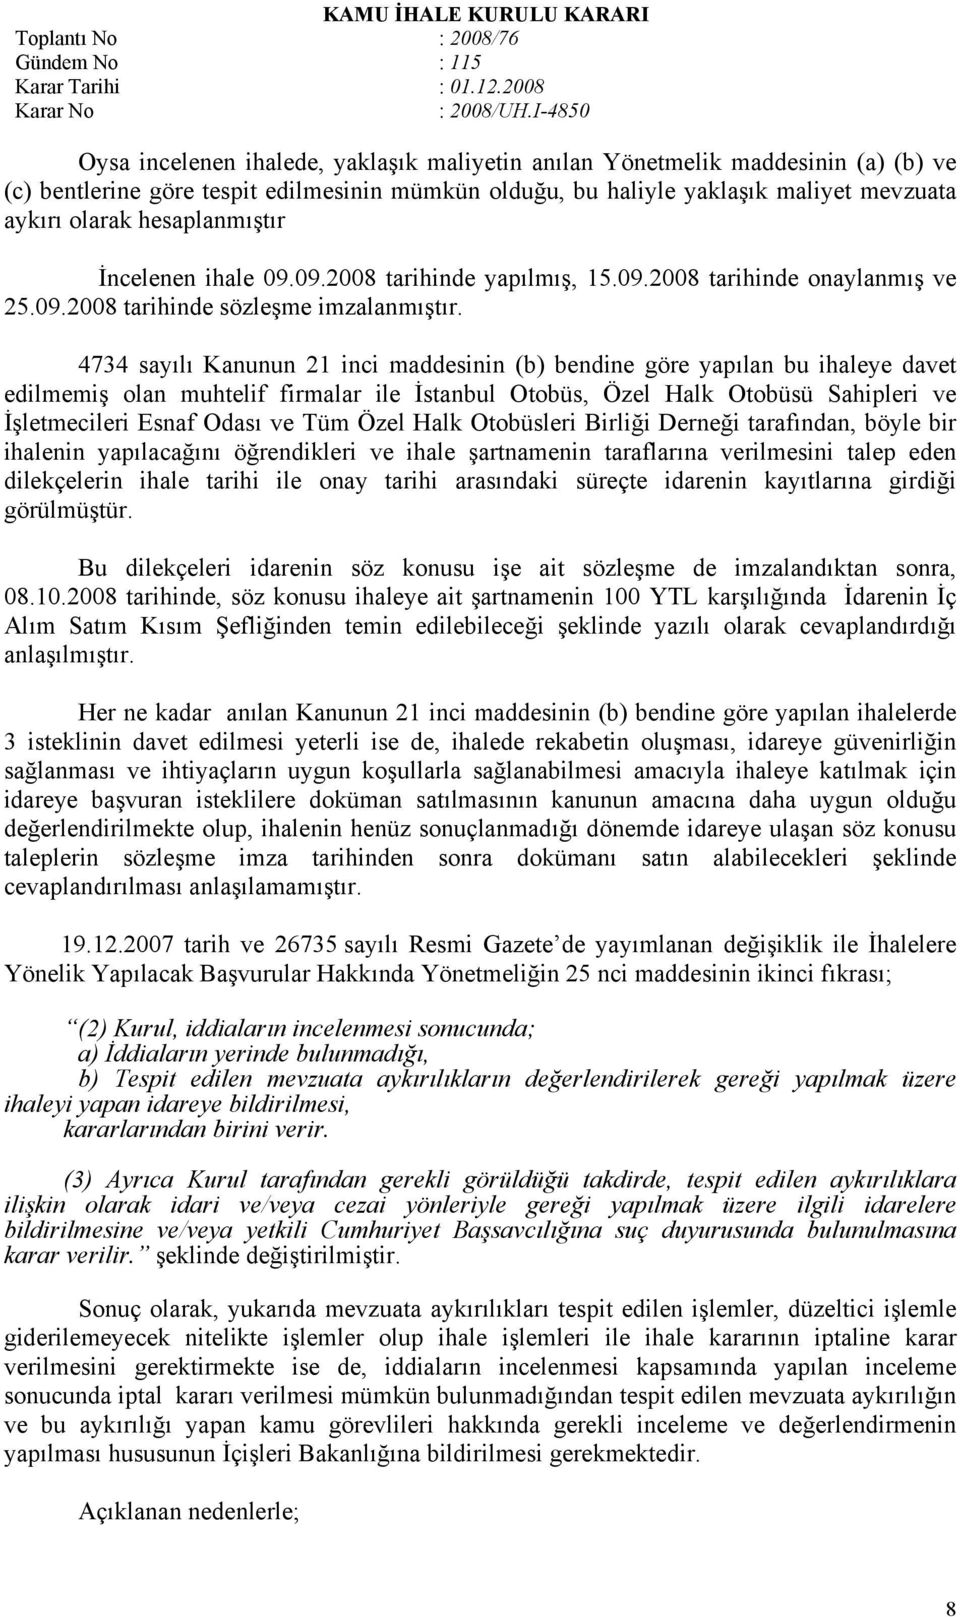 4734 sayılı Kanunun 21 inci maddesinin (b) bendine göre yapılan bu ihaleye davet edilmemiş olan muhtelif firmalar ile İstanbul Otobüs, Özel Halk Otobüsü Sahipleri ve İşletmecileri Esnaf Odası ve Tüm